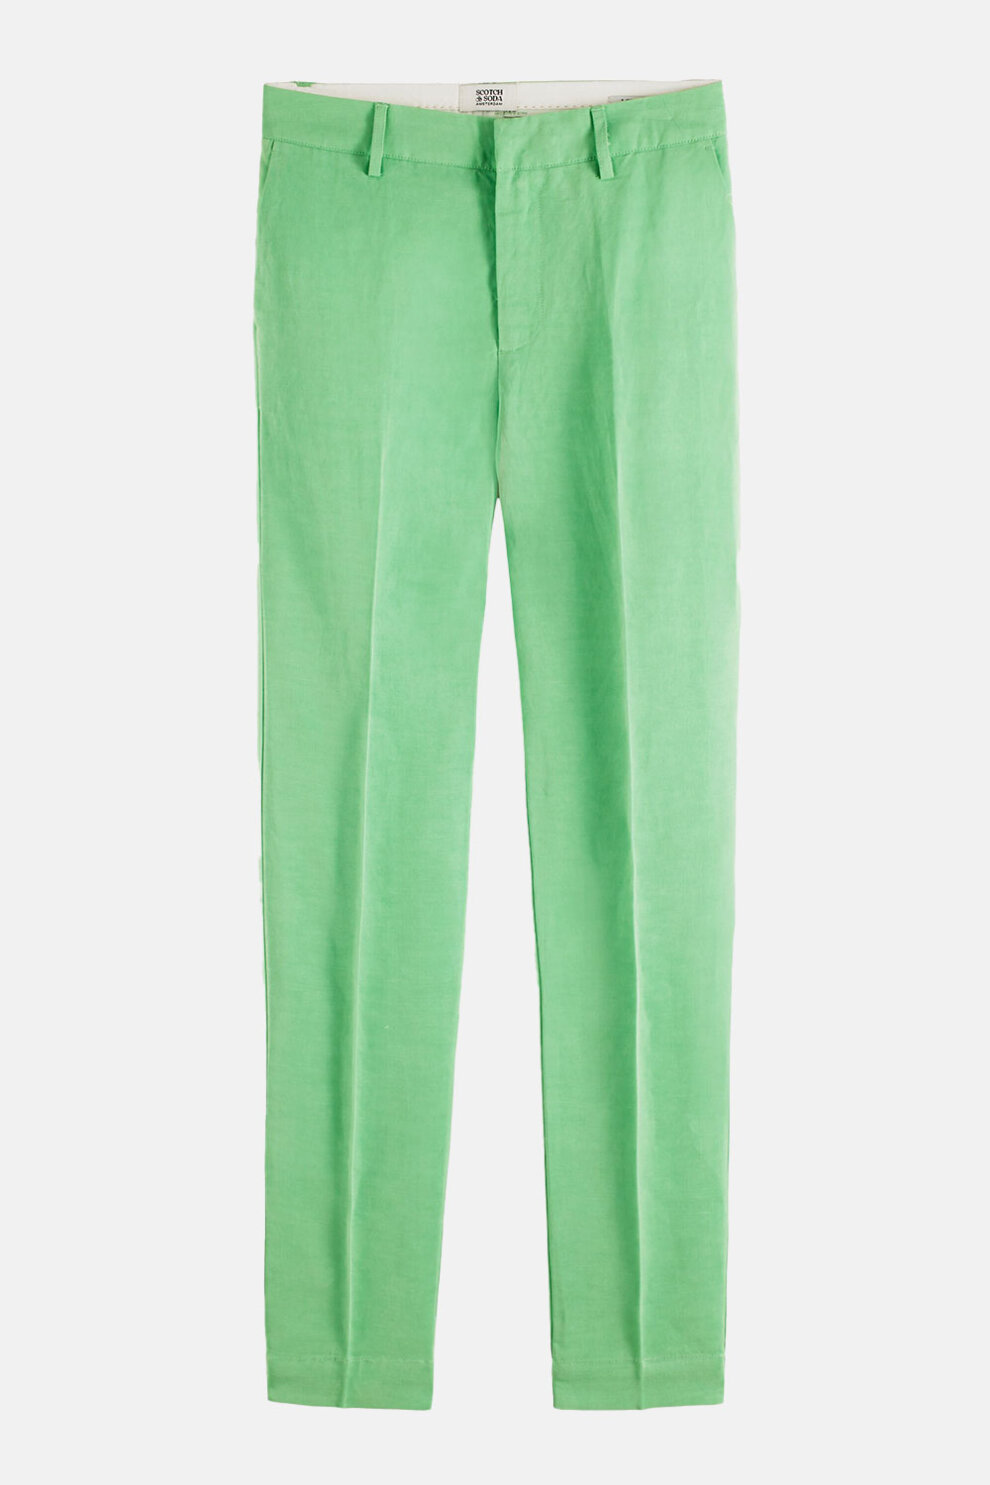 ŽENE - Odijela - Scotch & Soda Lowry hlače - Hlače od odijela - Zelena